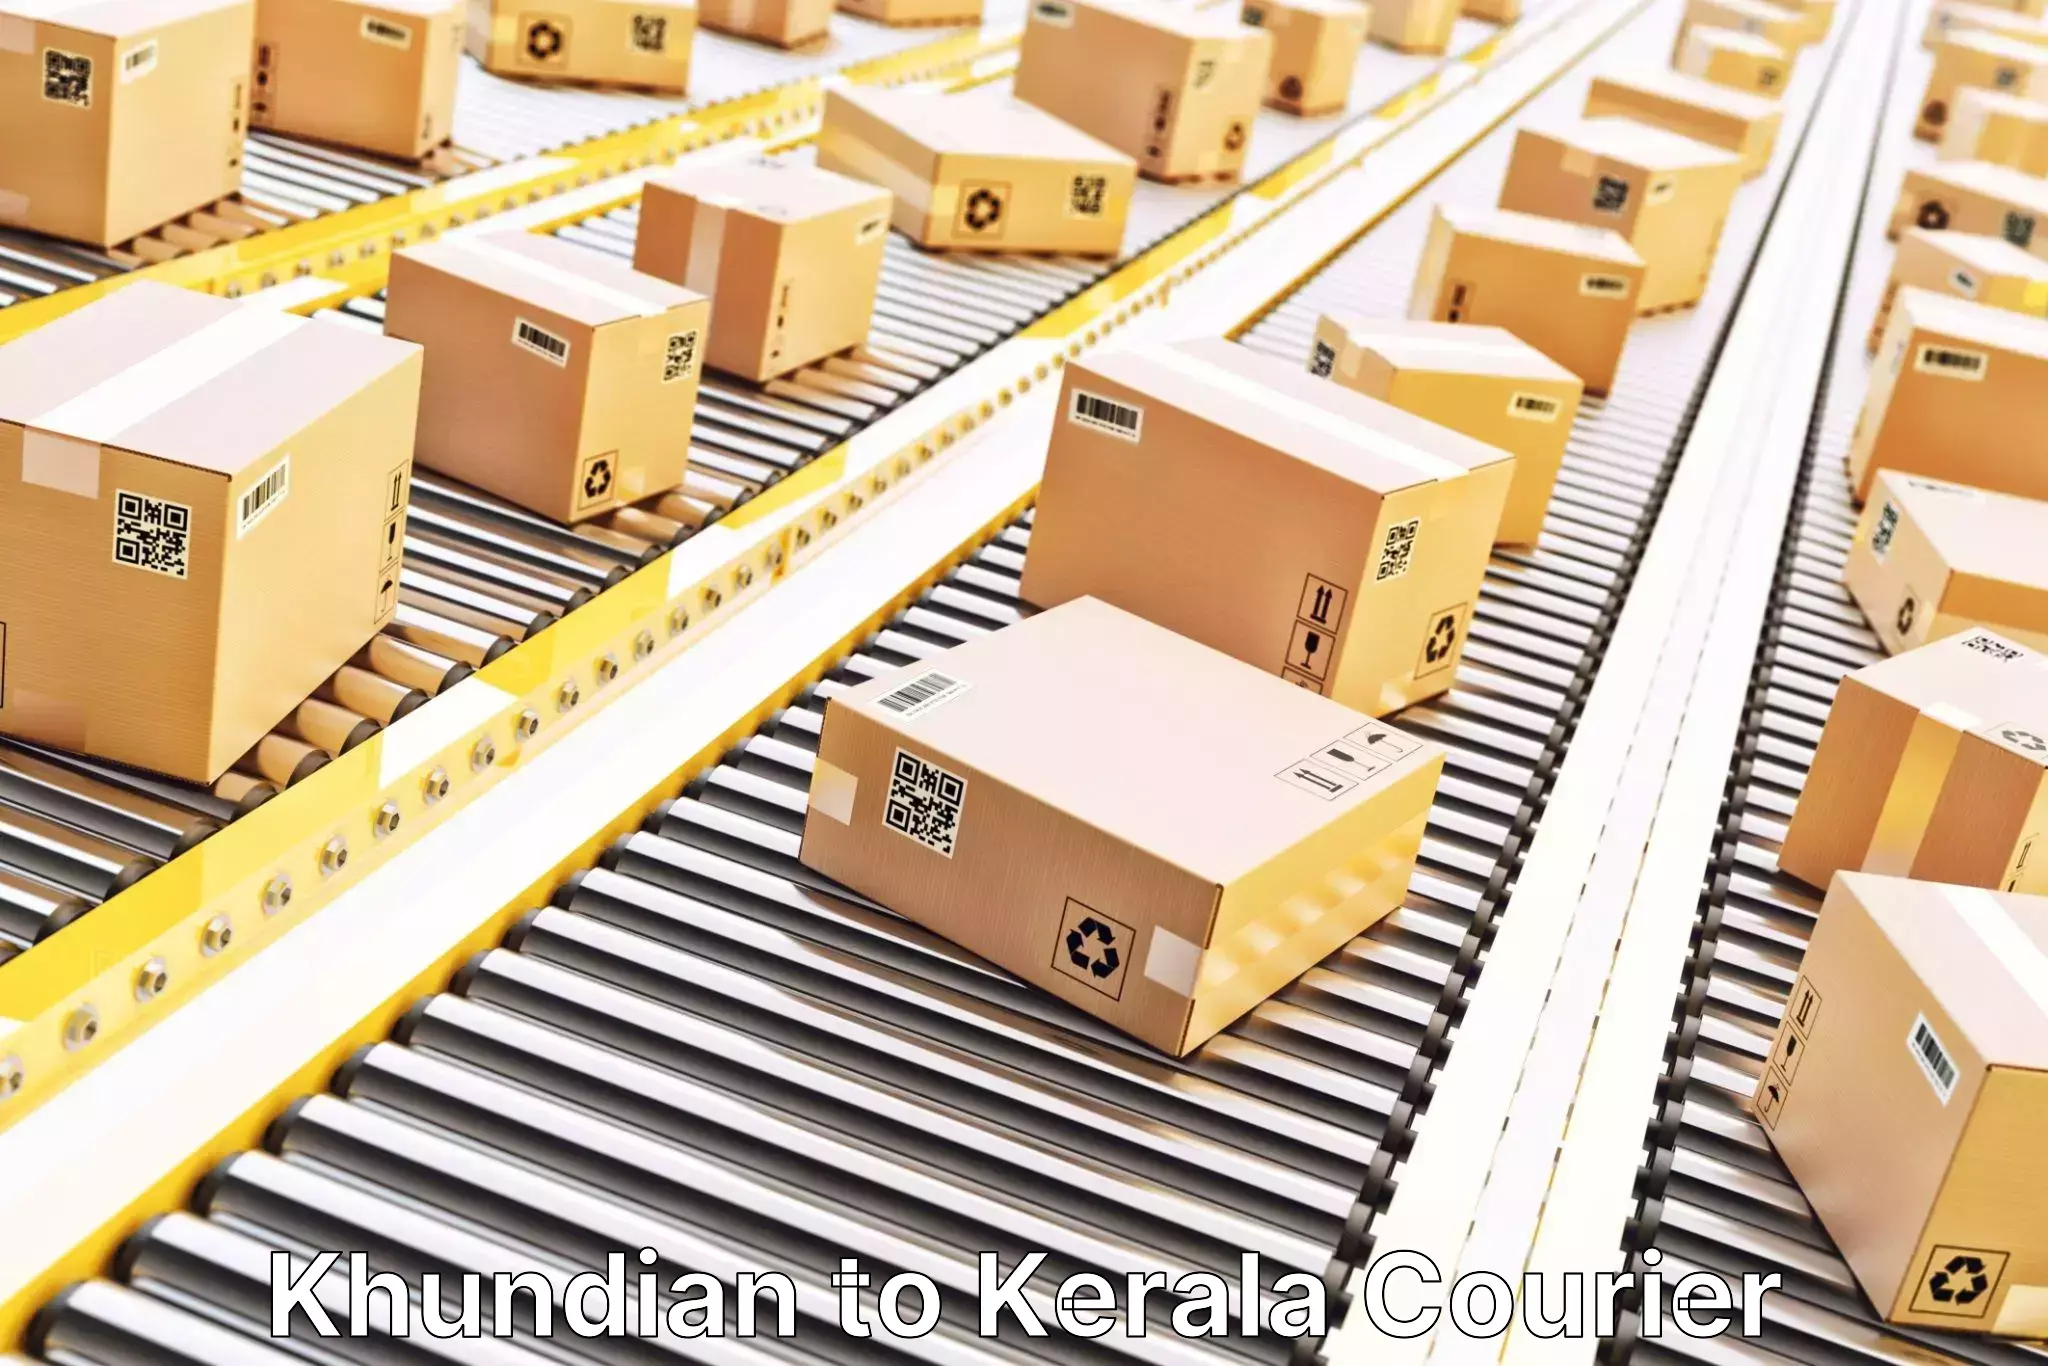 Next-generation courier services Khundian to Adur Kla